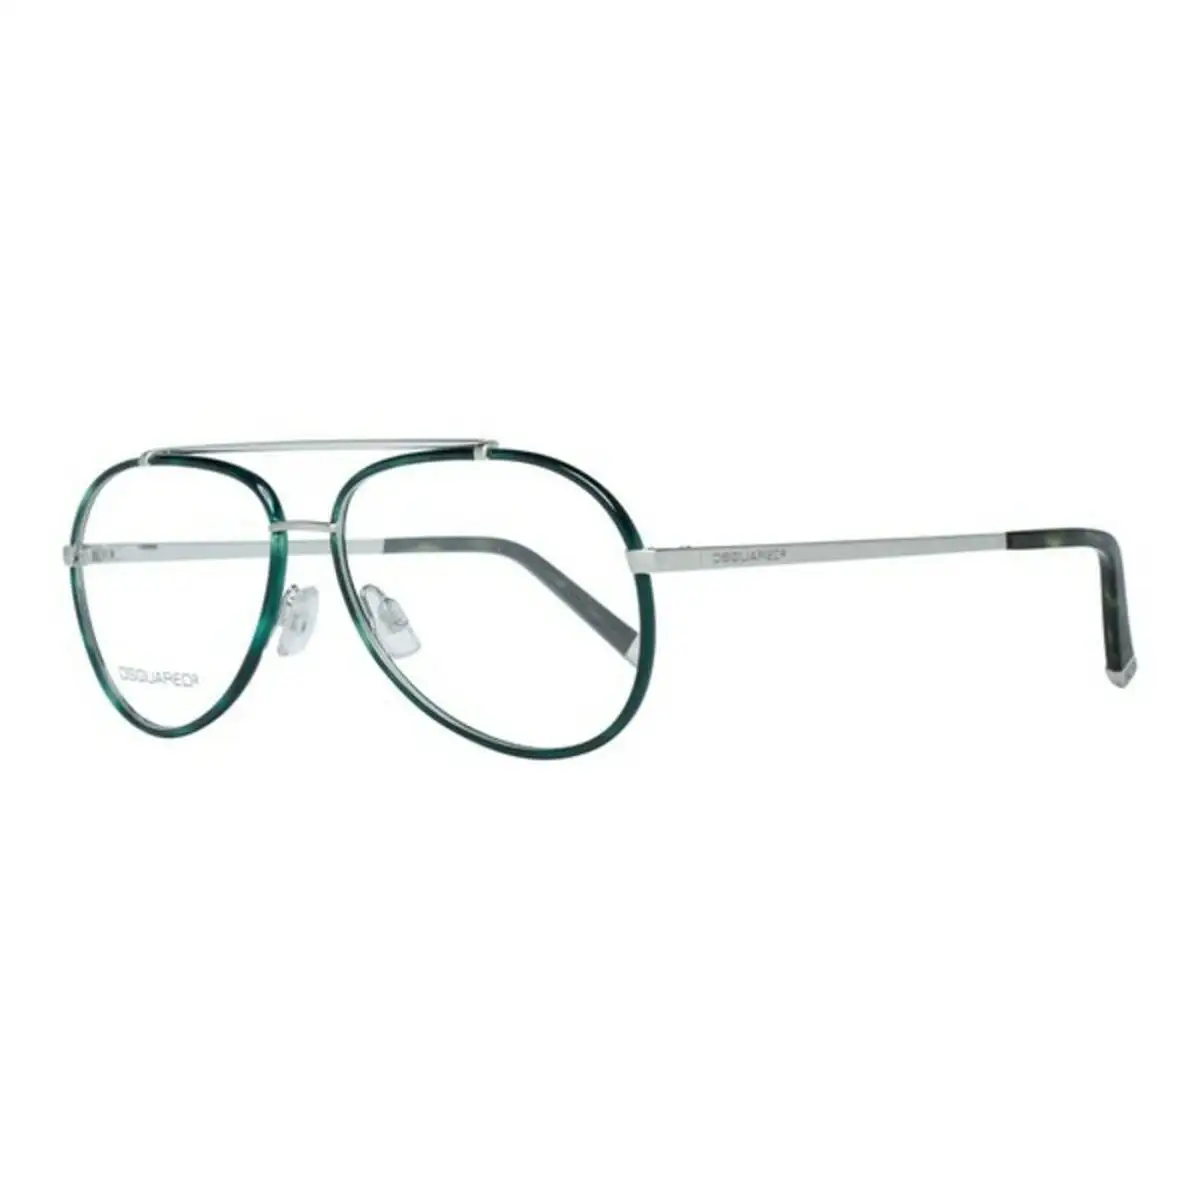 Monture de lunettes femme dsquared2 dq5072 020 o 54 mm vert o 54 mm _6827. DIAYTAR SENEGAL - Votre Source de Découvertes Shopping. Découvrez des trésors dans notre boutique en ligne, allant des articles artisanaux aux innovations modernes.